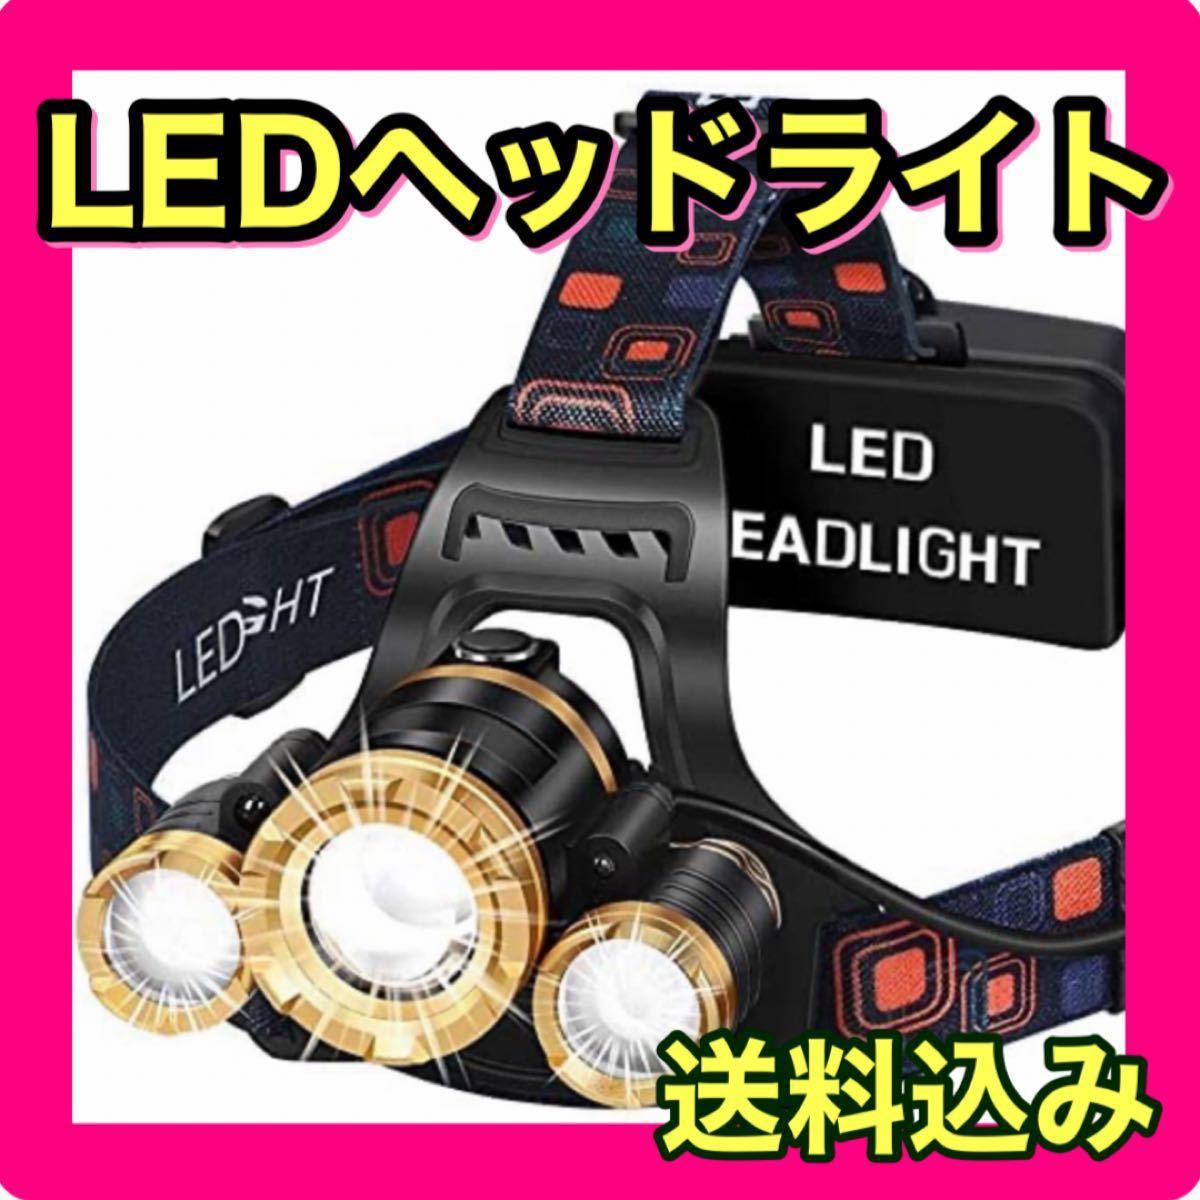 【新品未使用】ヘッドライト アウトドア用ヘッドライト 45g超軽量 4種点灯モード 白ライト